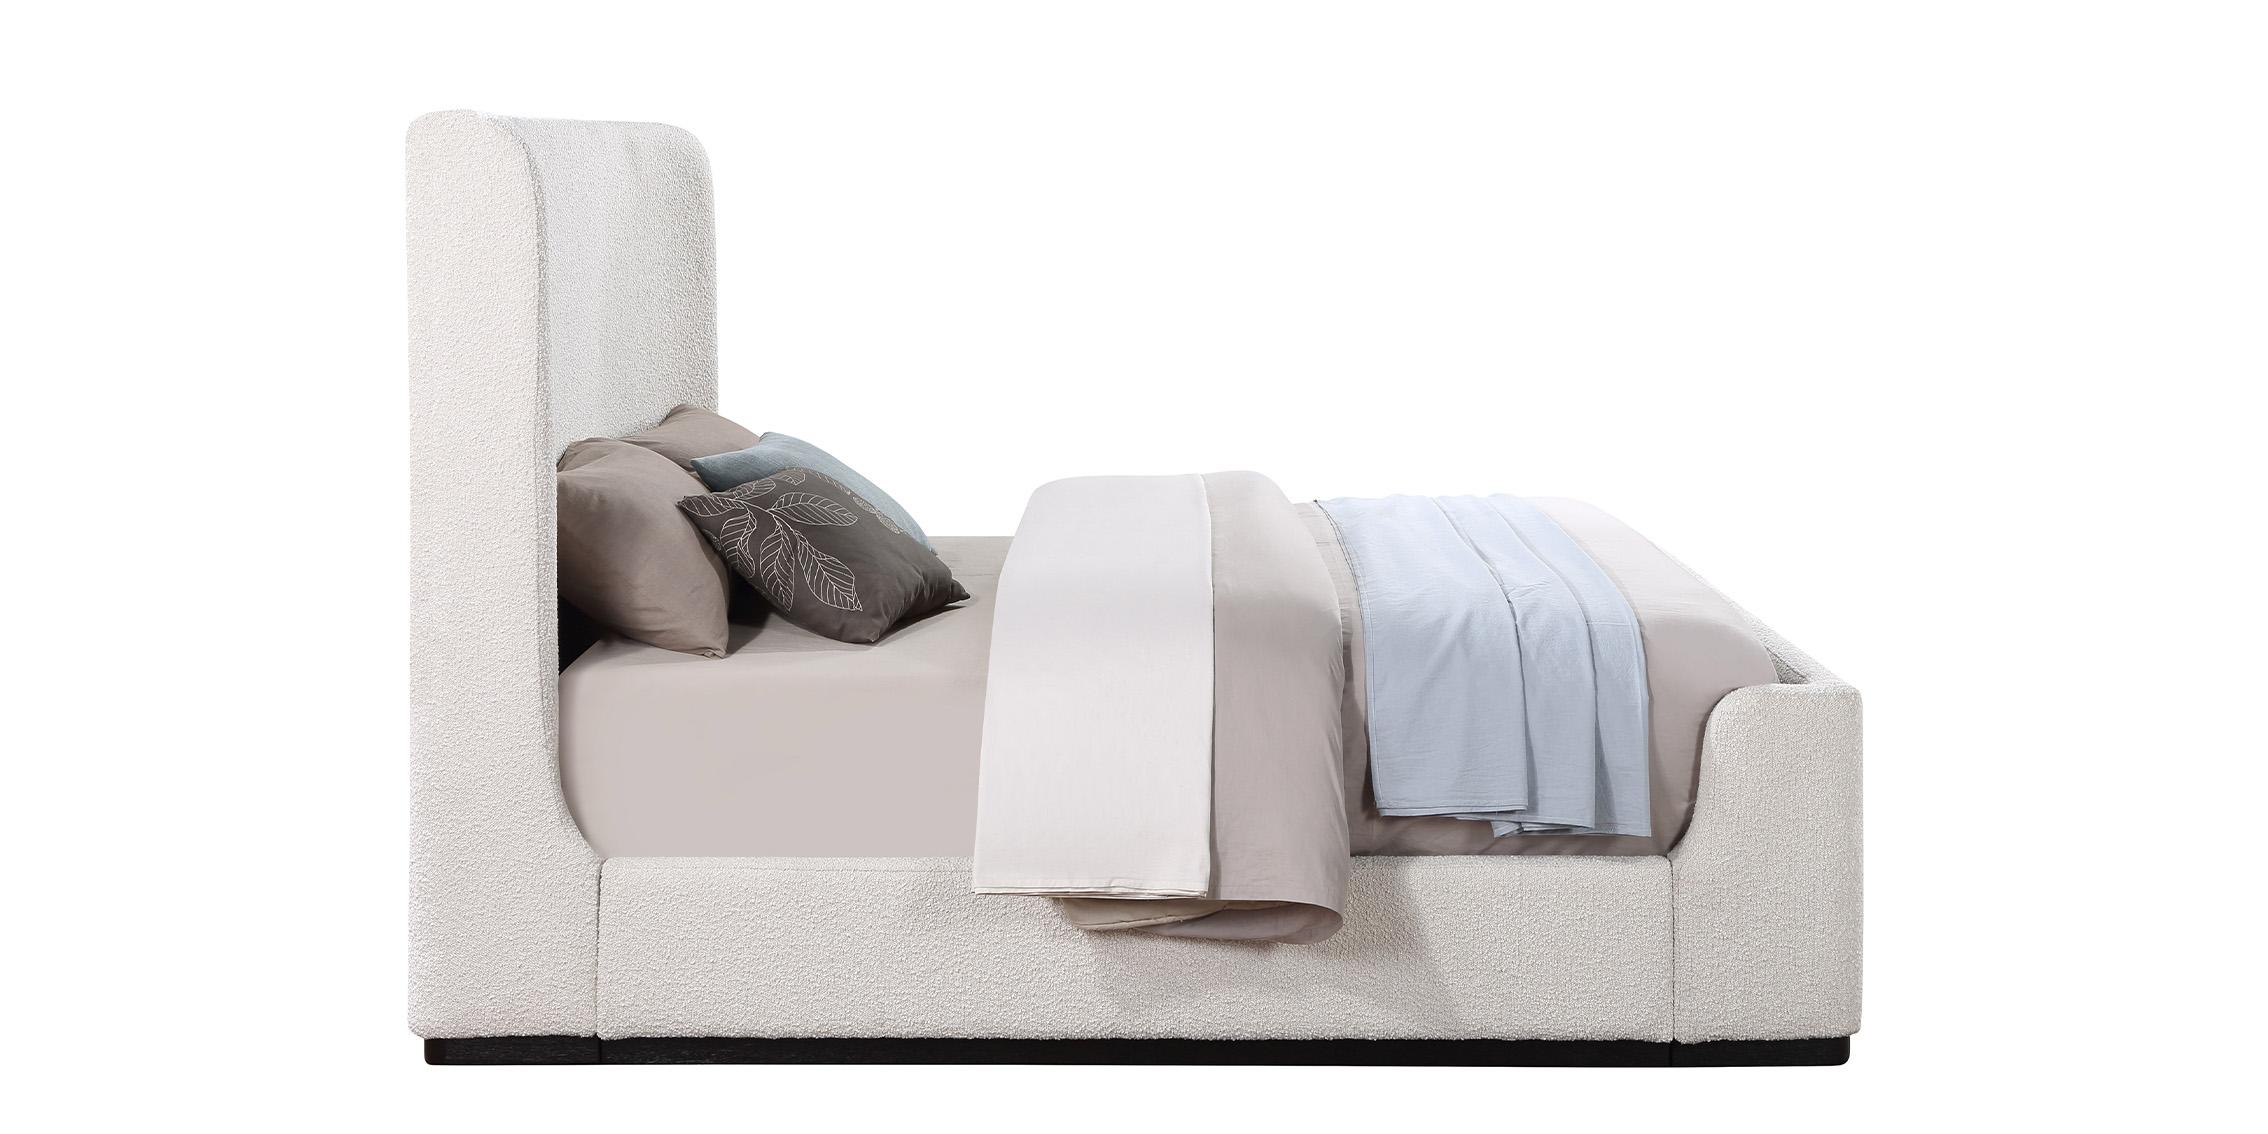 

    
OliverCream-F Meridian Furniture Platform Bed
